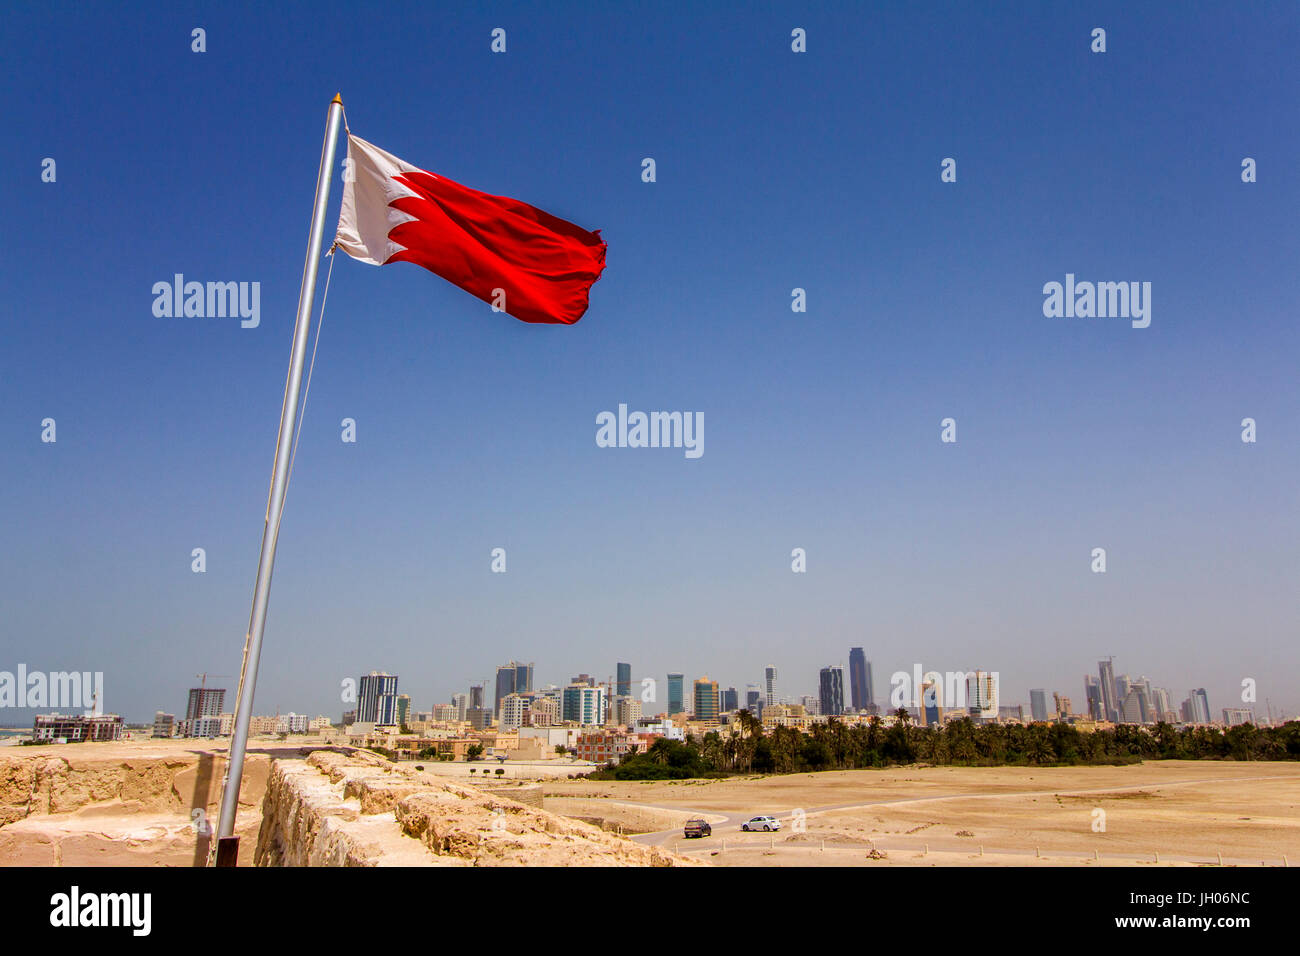 Drapeau Bahreïn brandit à Qal'at Al Bahreïn, Bahreïn est l'un des neuf pays couper ses relations diplomatiques avec le Qatar dans la récente crise du Golfe Persique Banque D'Images